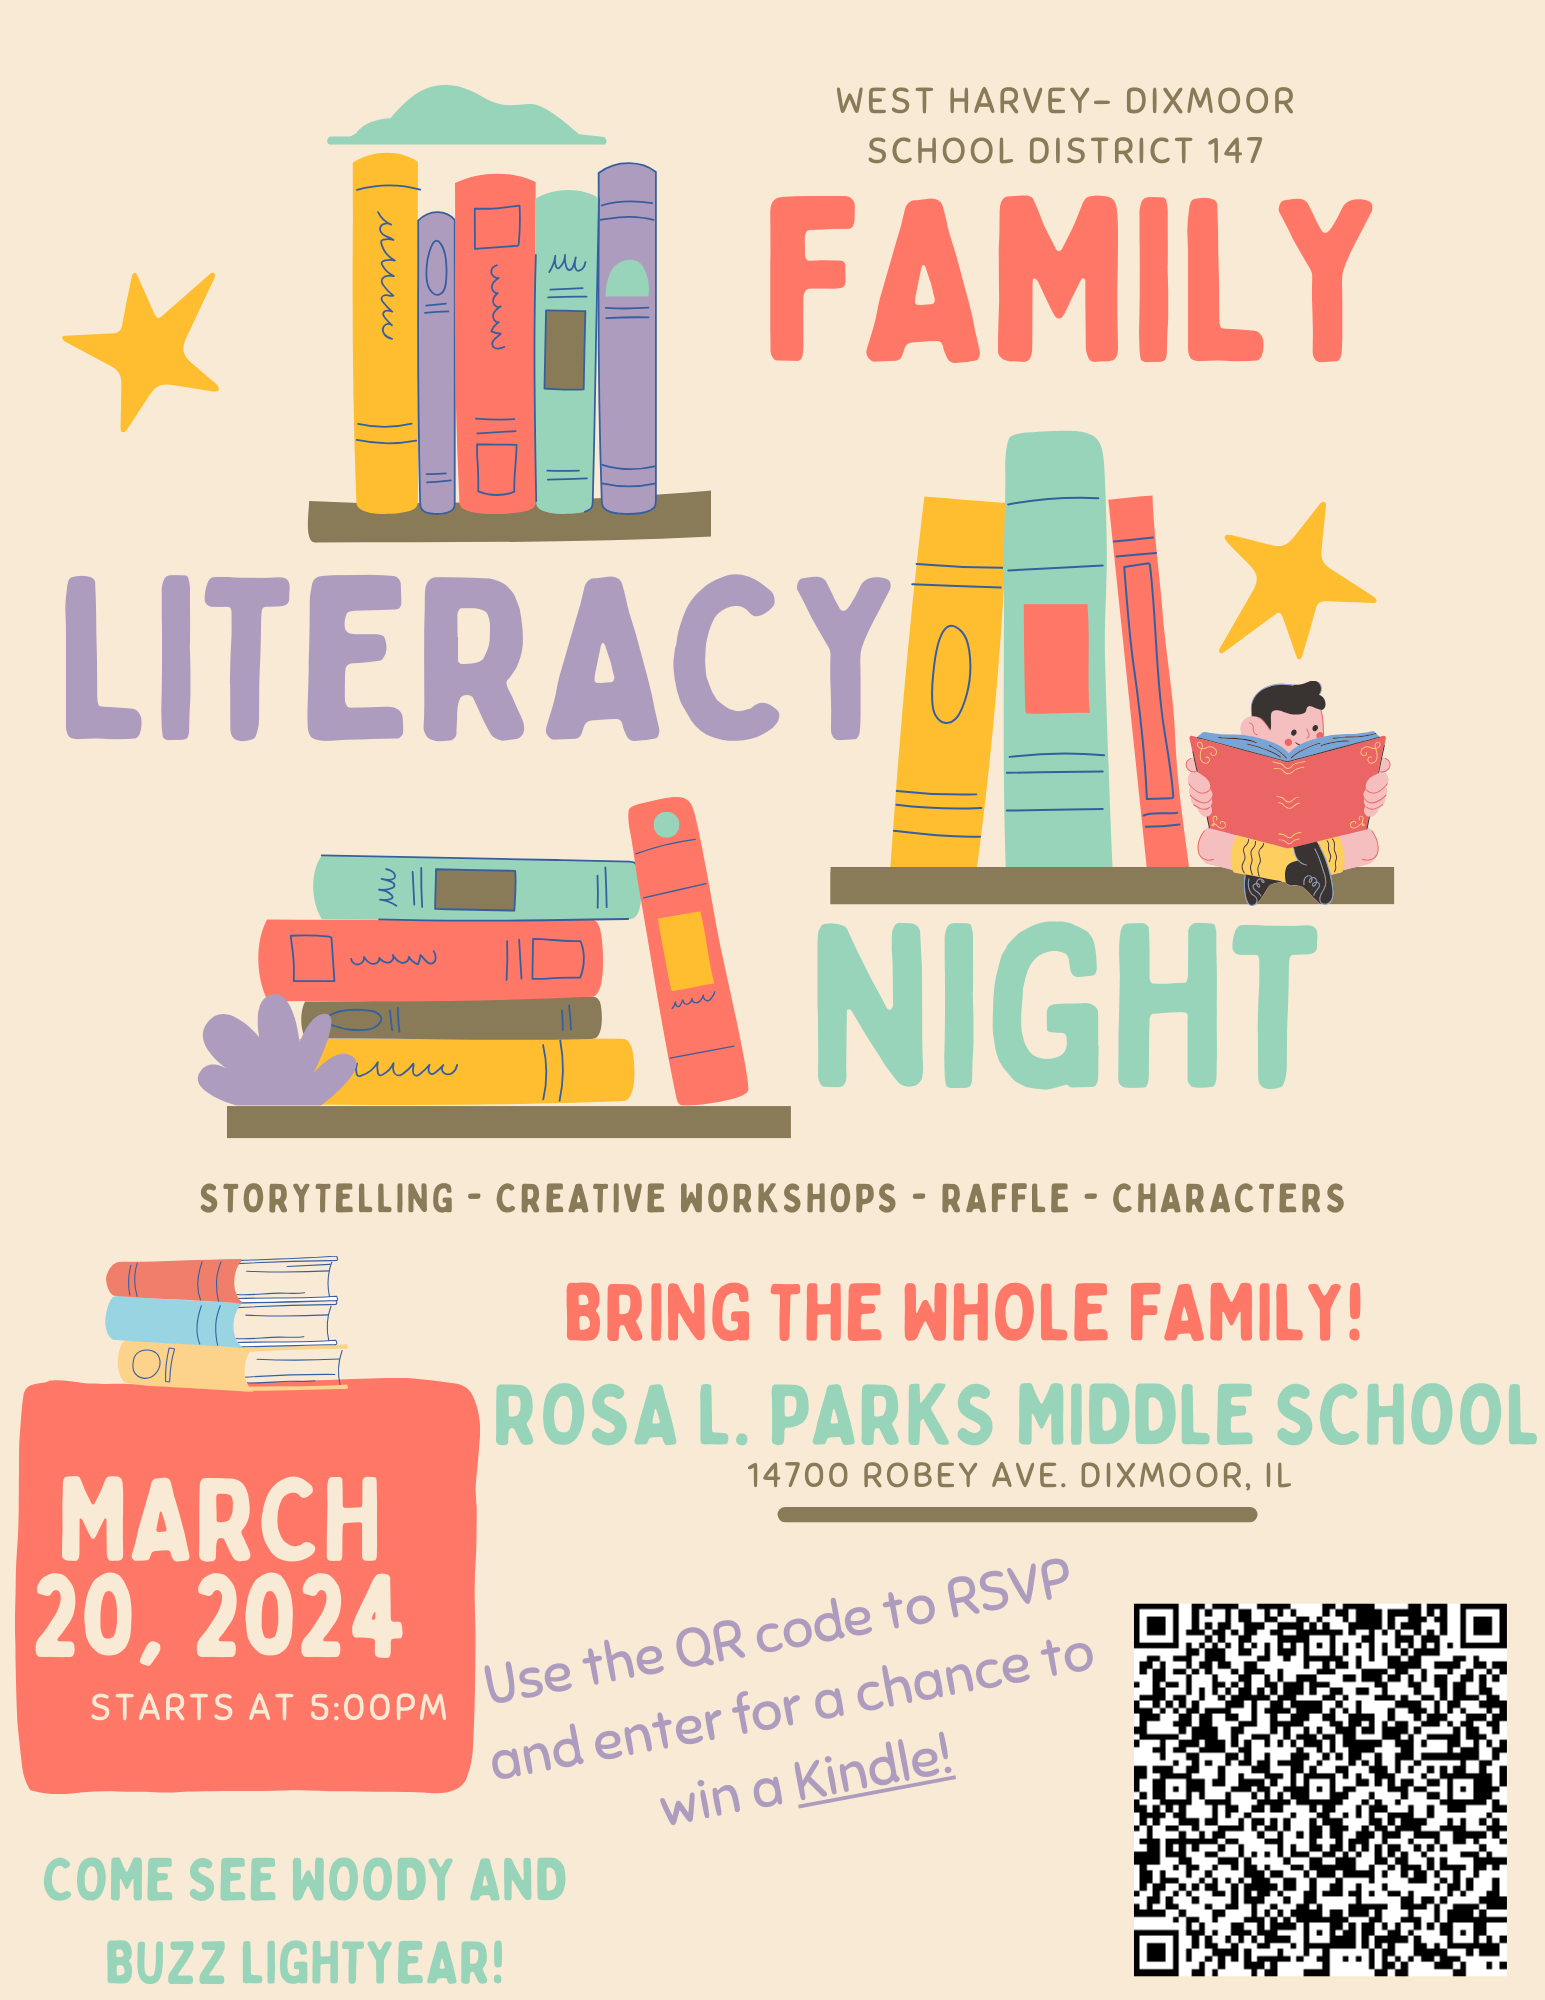 Family Literacy Night Flyer